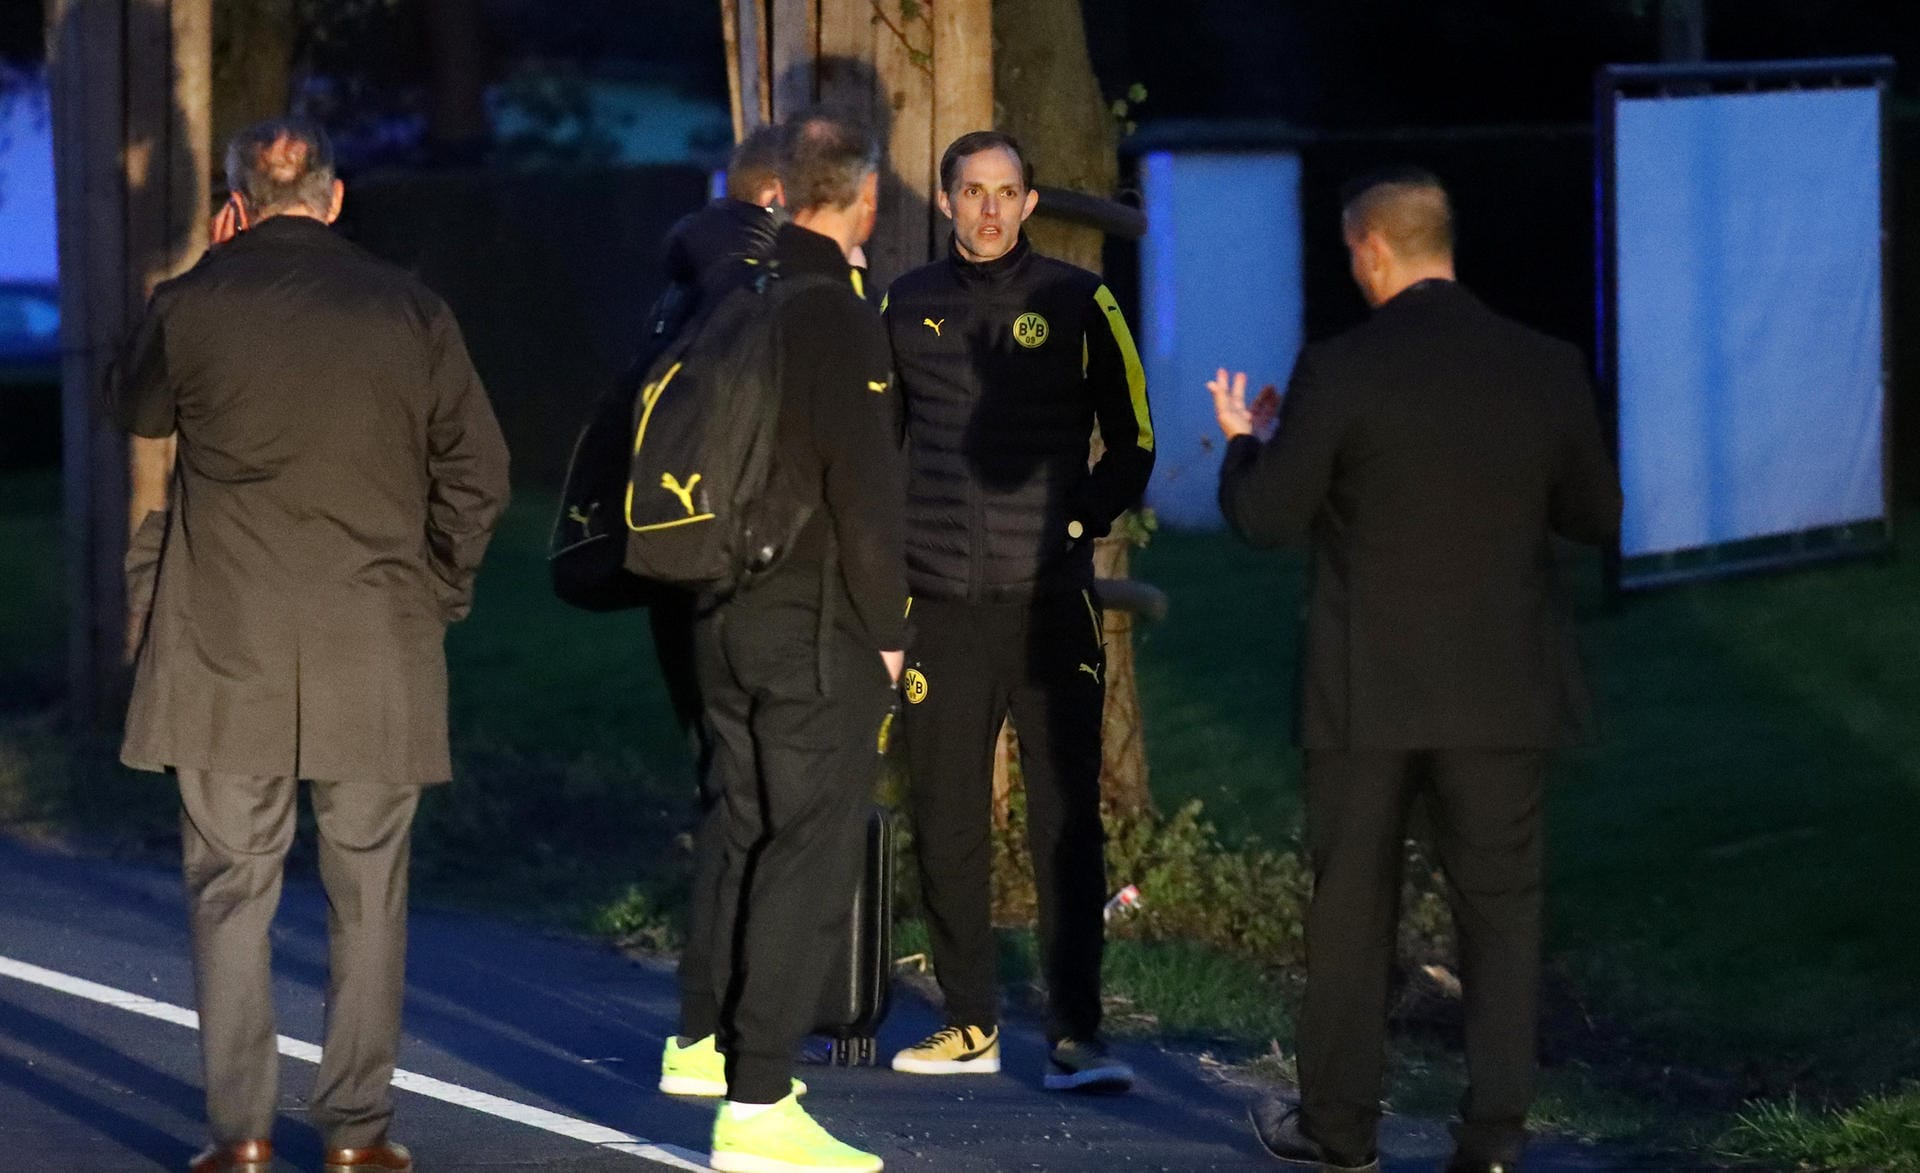 Bange Minuten nach dem Attentat: BVB-Trainer Thomas Tuchel ist der Schock deutlich anzusehen.